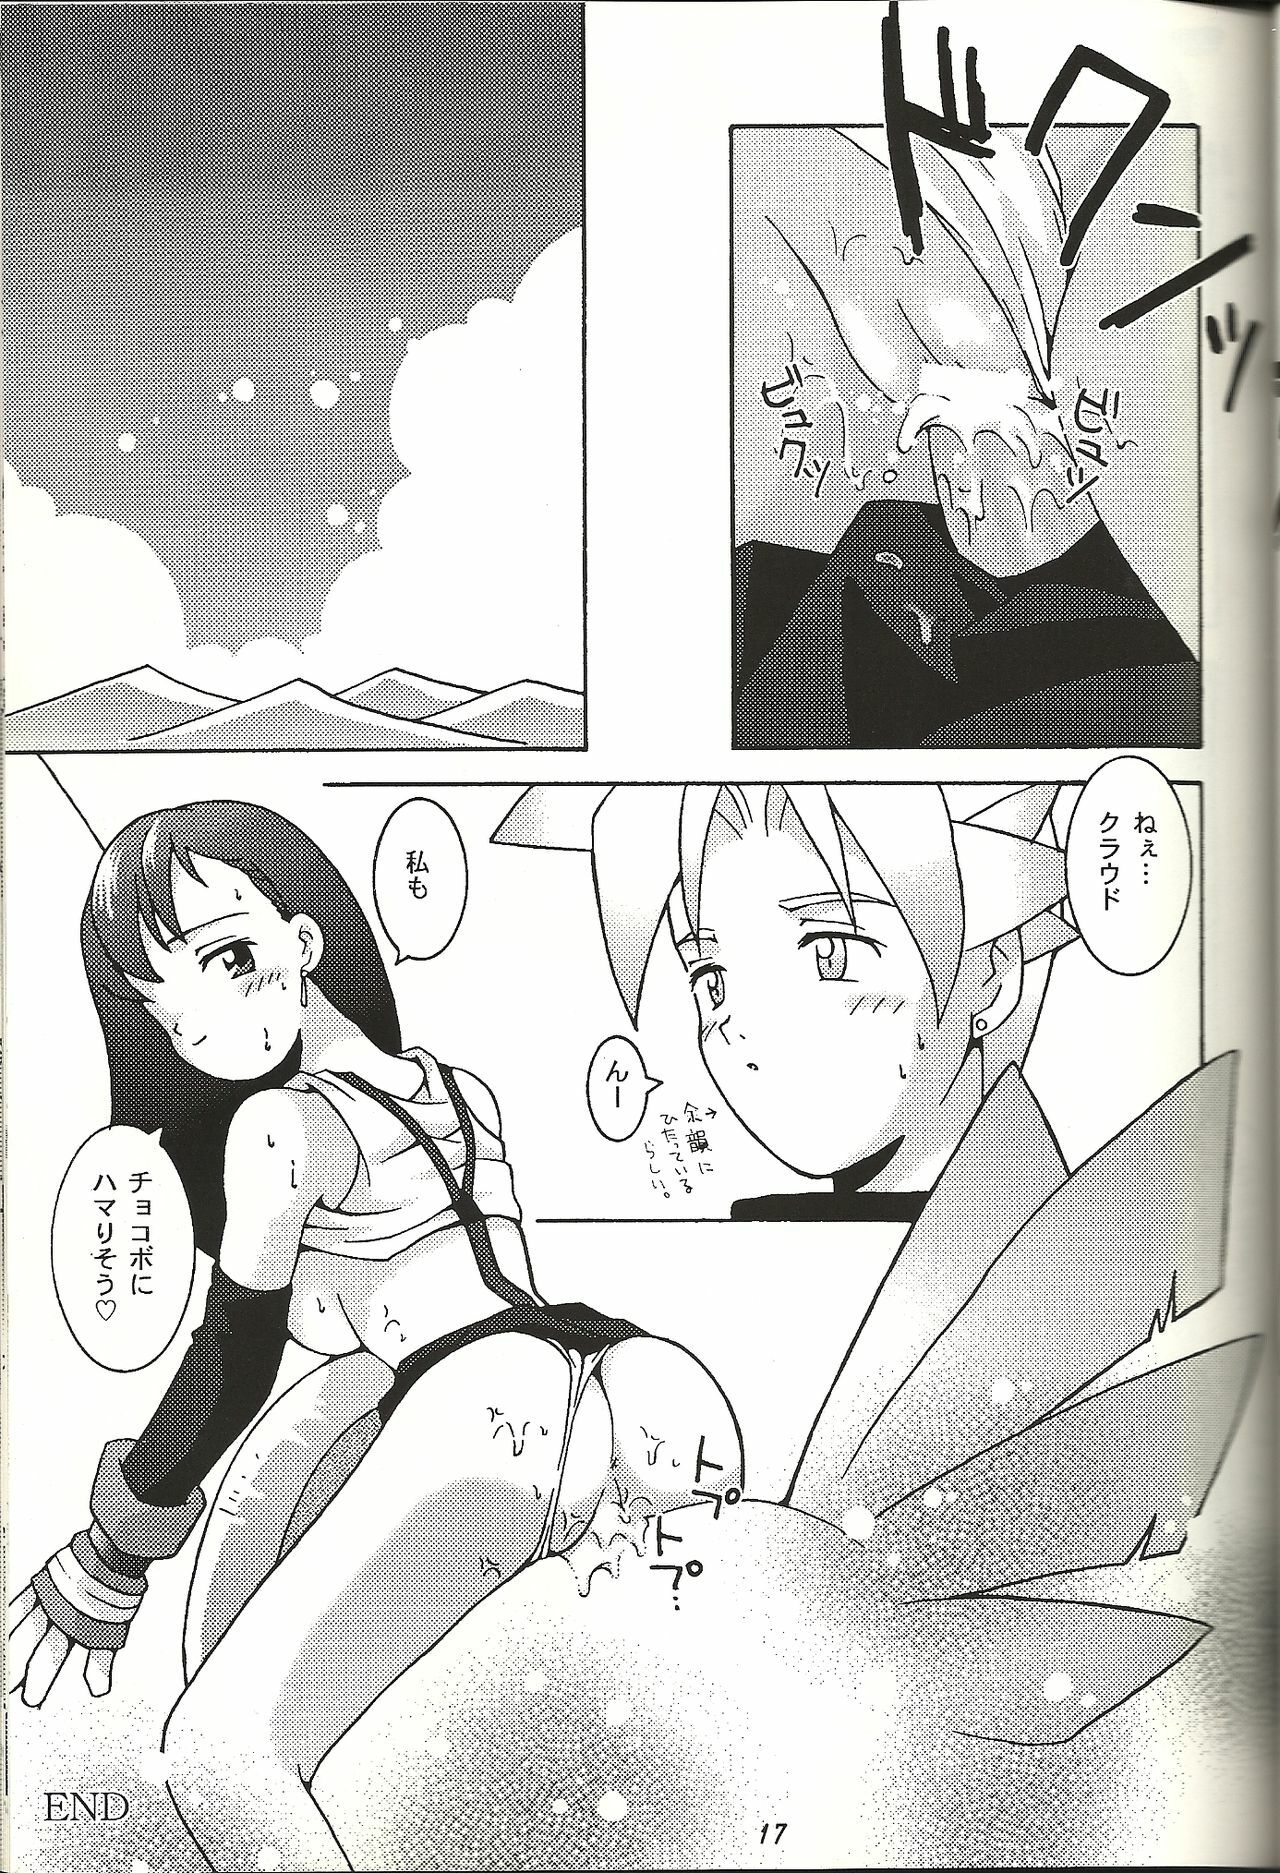 (CR21) [Bakuhatsu BRS. (B.Tarou)] Renai Shiyou (Final Fantasy VII) page 17 full